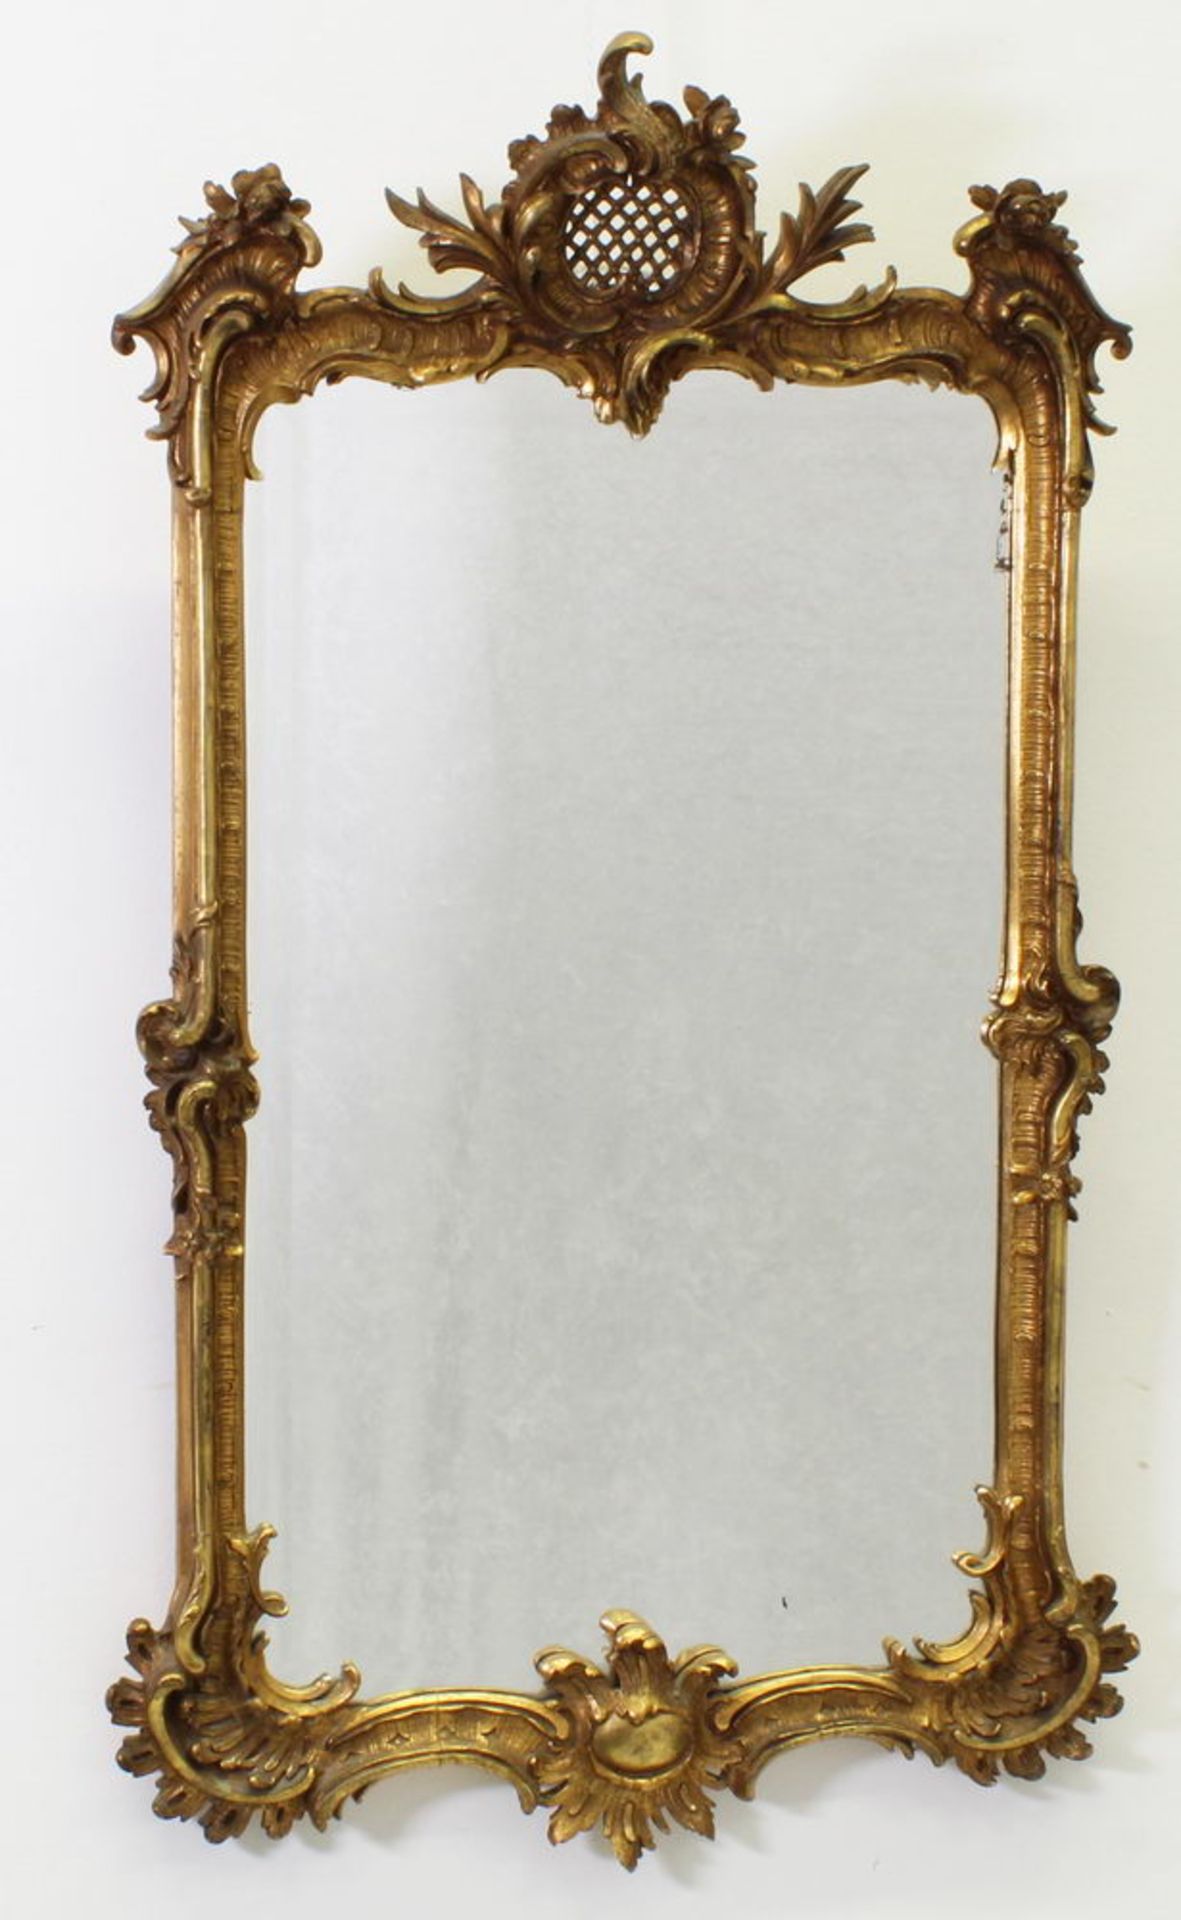 Wandspiegel, Rokokoform, 19./20. Jh., goldfarbig, ca. 100 x 58 cm, kleine Beschädigungen, geklebt